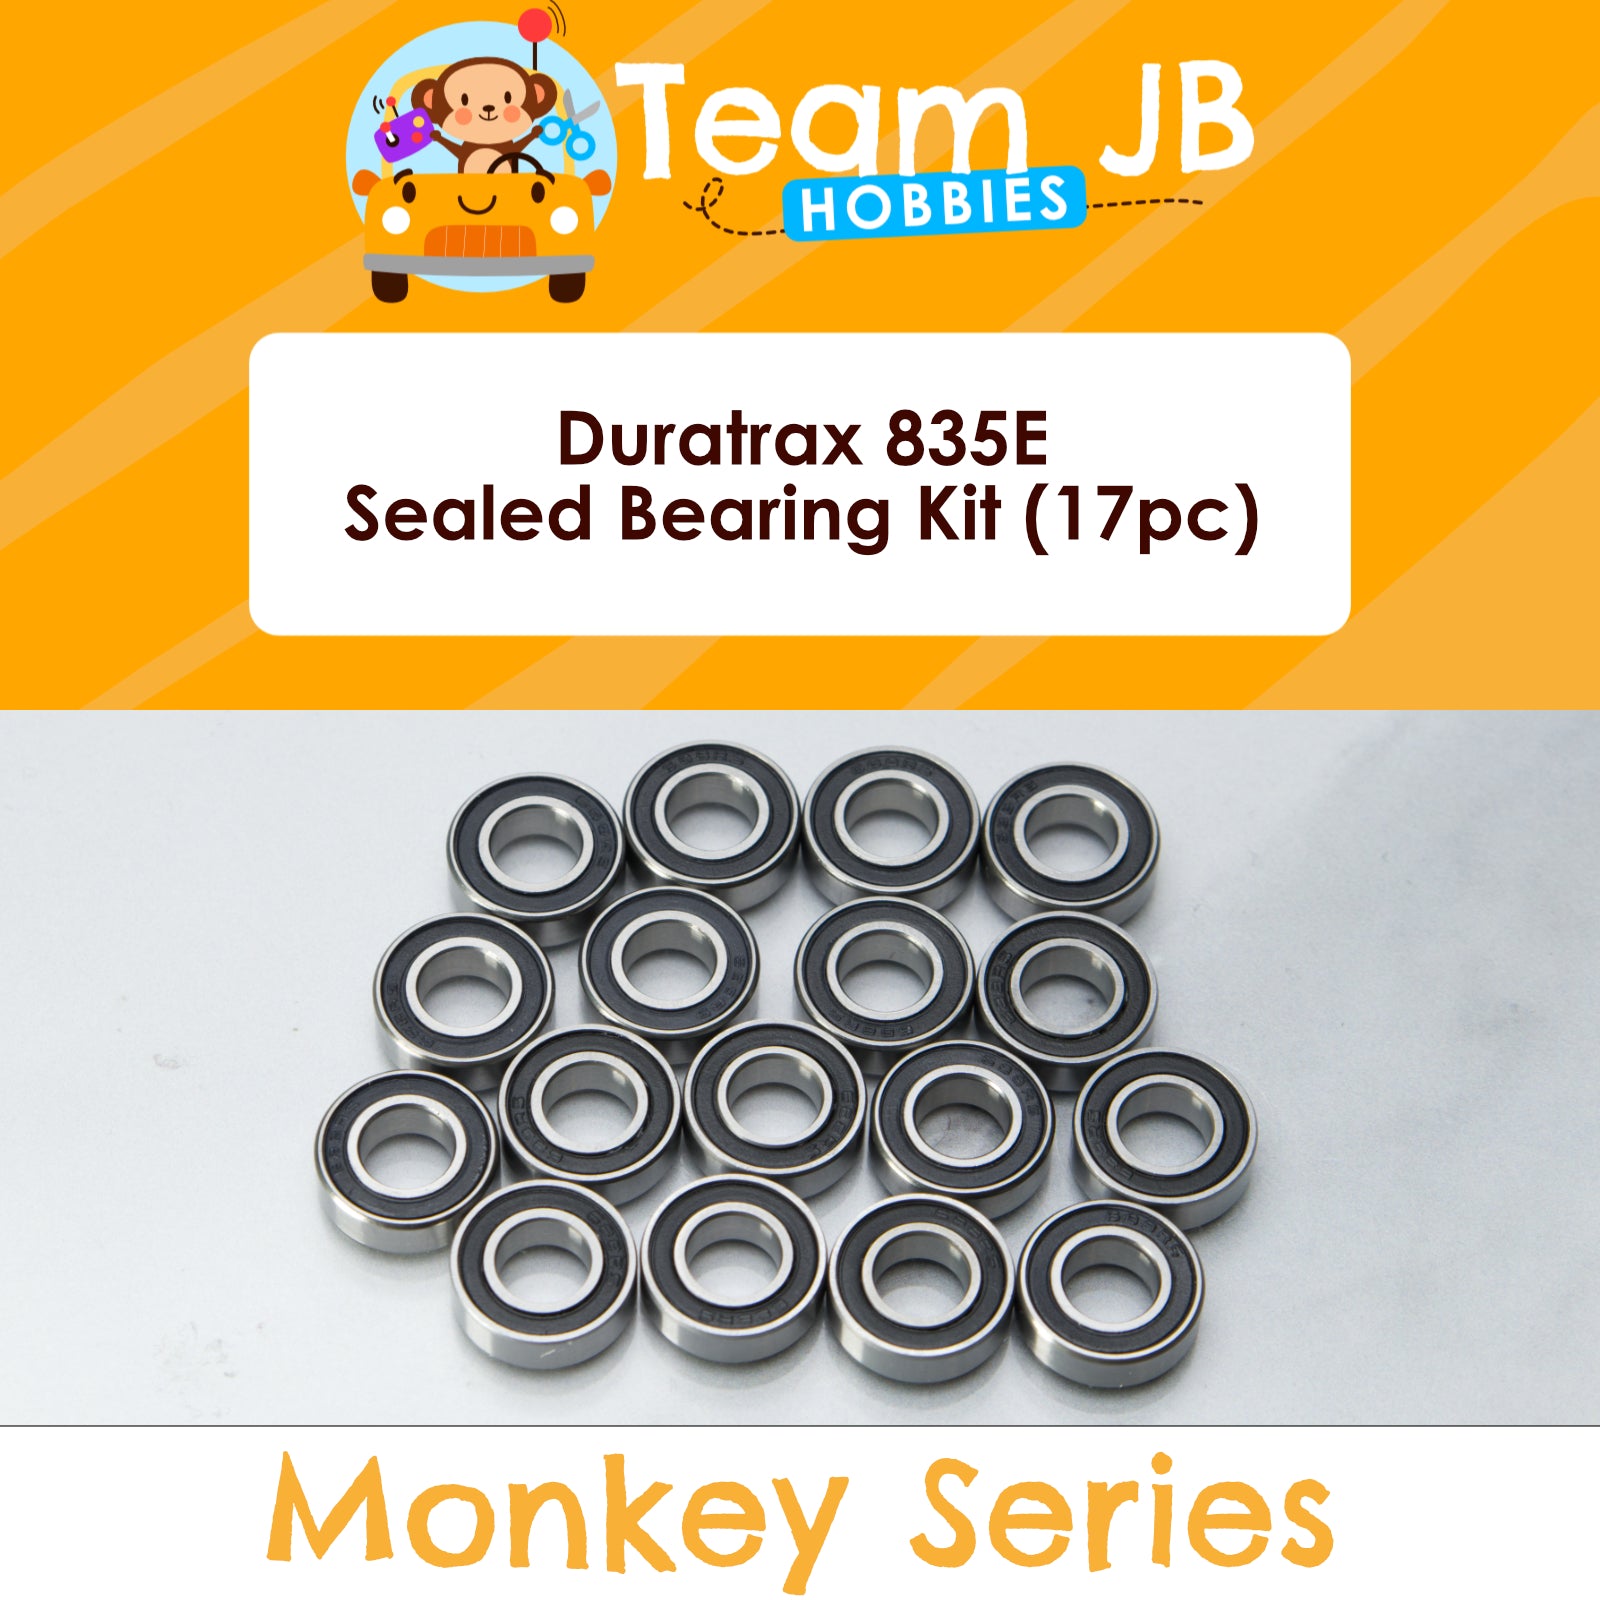 Duratrax 835E - Sealed Bearing Kit